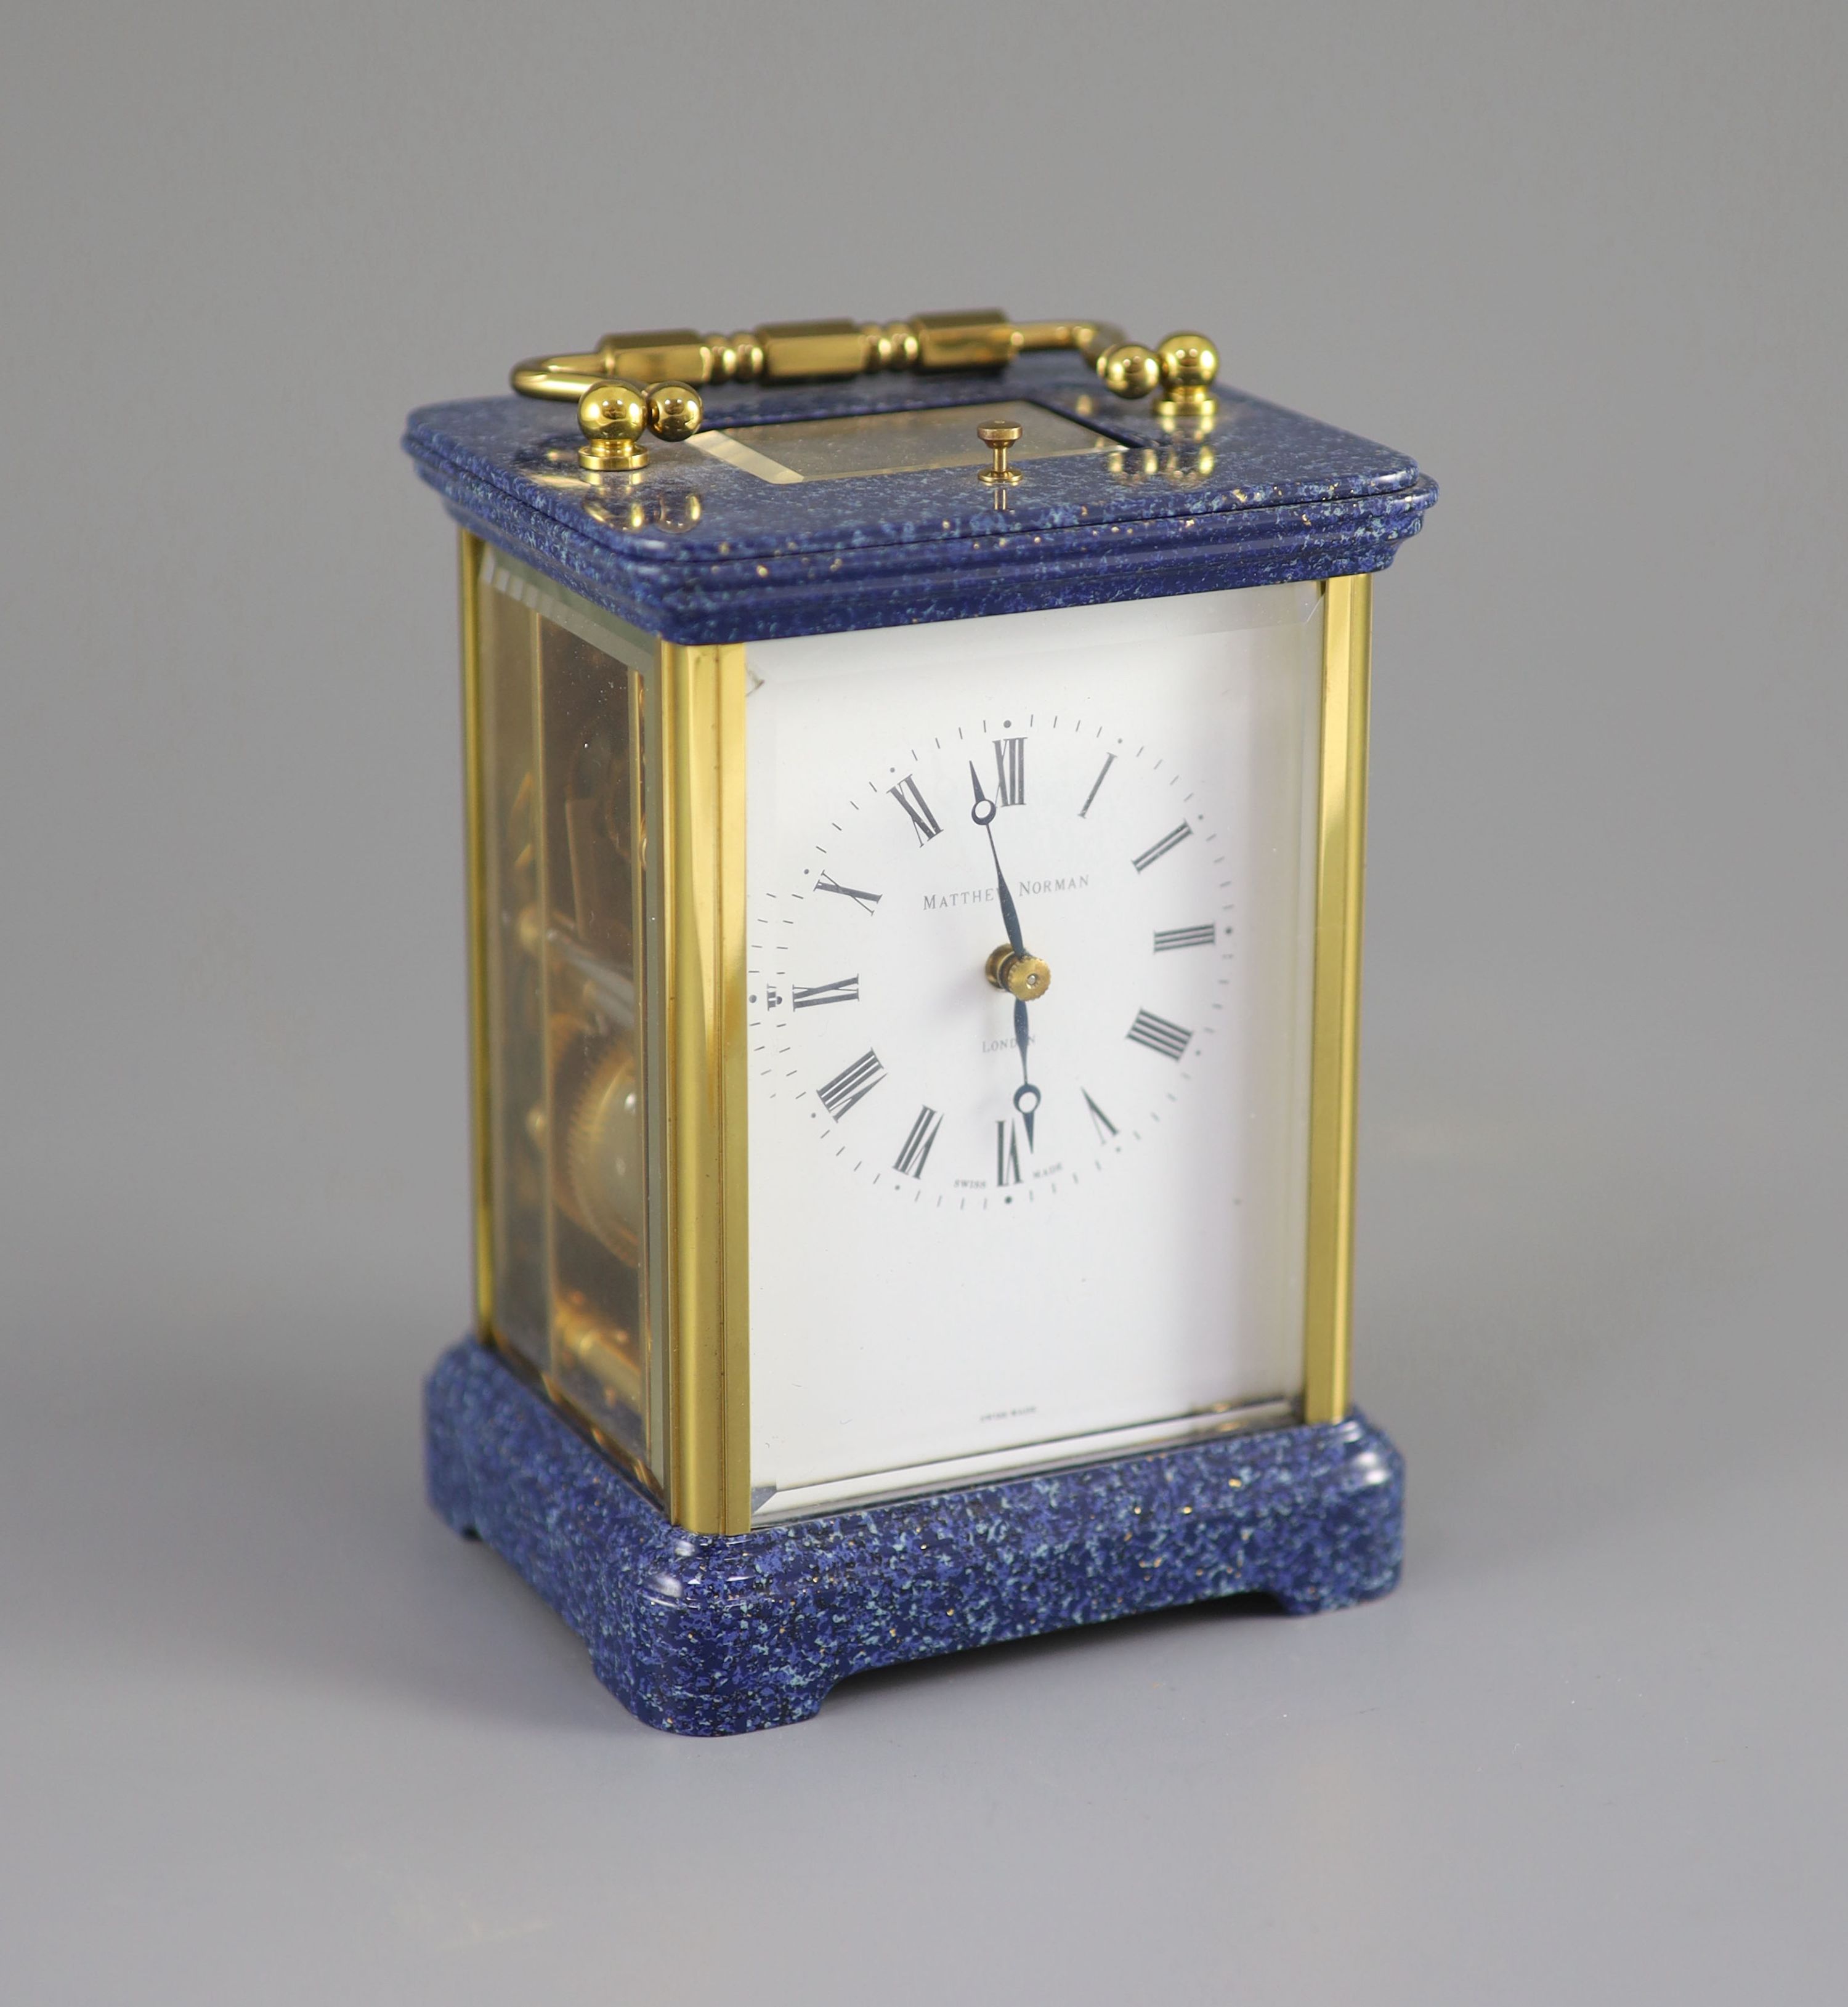 A 20th Century Swiss-made brass carriage clock, Matthew Norman, London, 13.5cm high